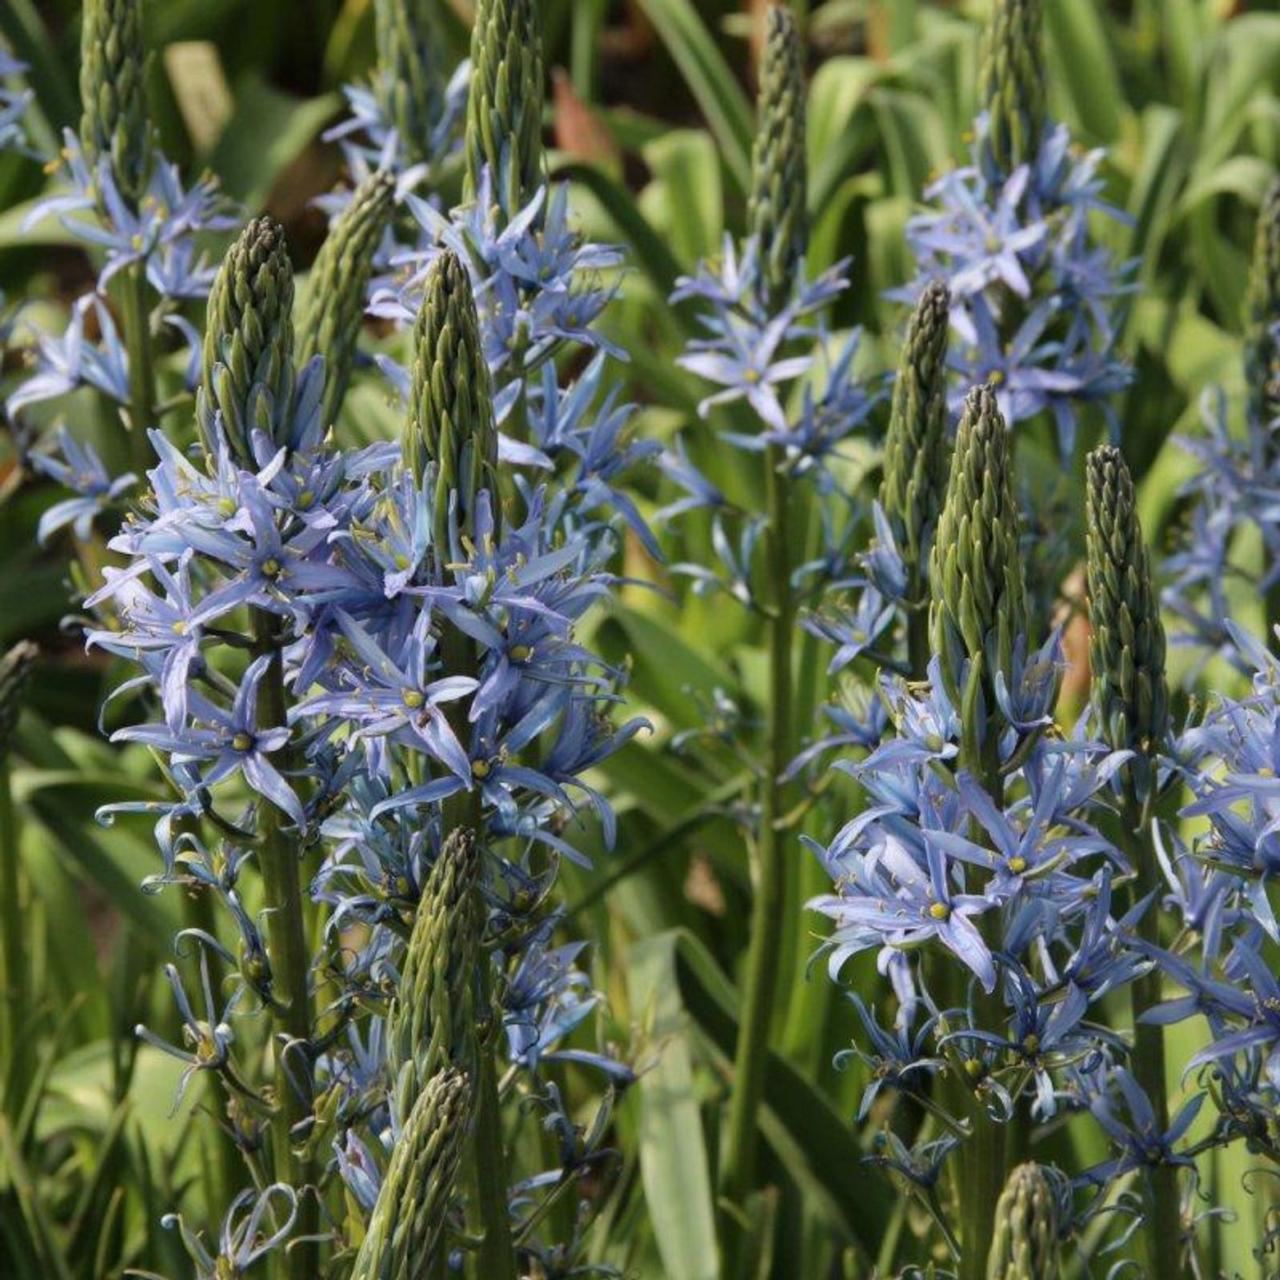 Camassia leichtlinii 'Blue Candle' plant